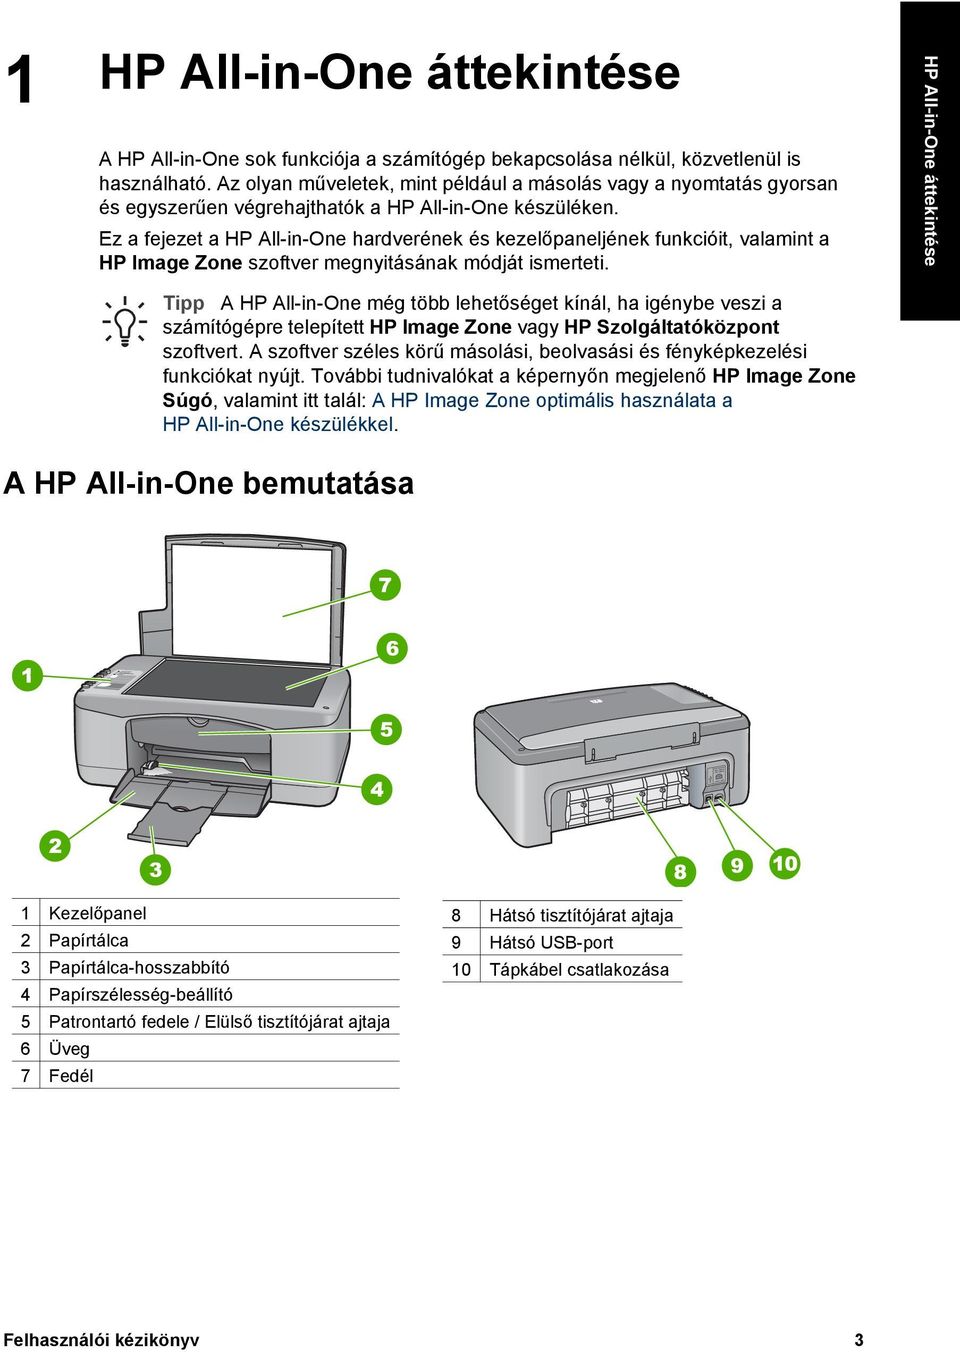 Ez a fejezet a HP All-in-One hardverének és kezelőpaneljének funkcióit, valamint a HP Image Zone szoftver megnyitásának módját ismerteti.